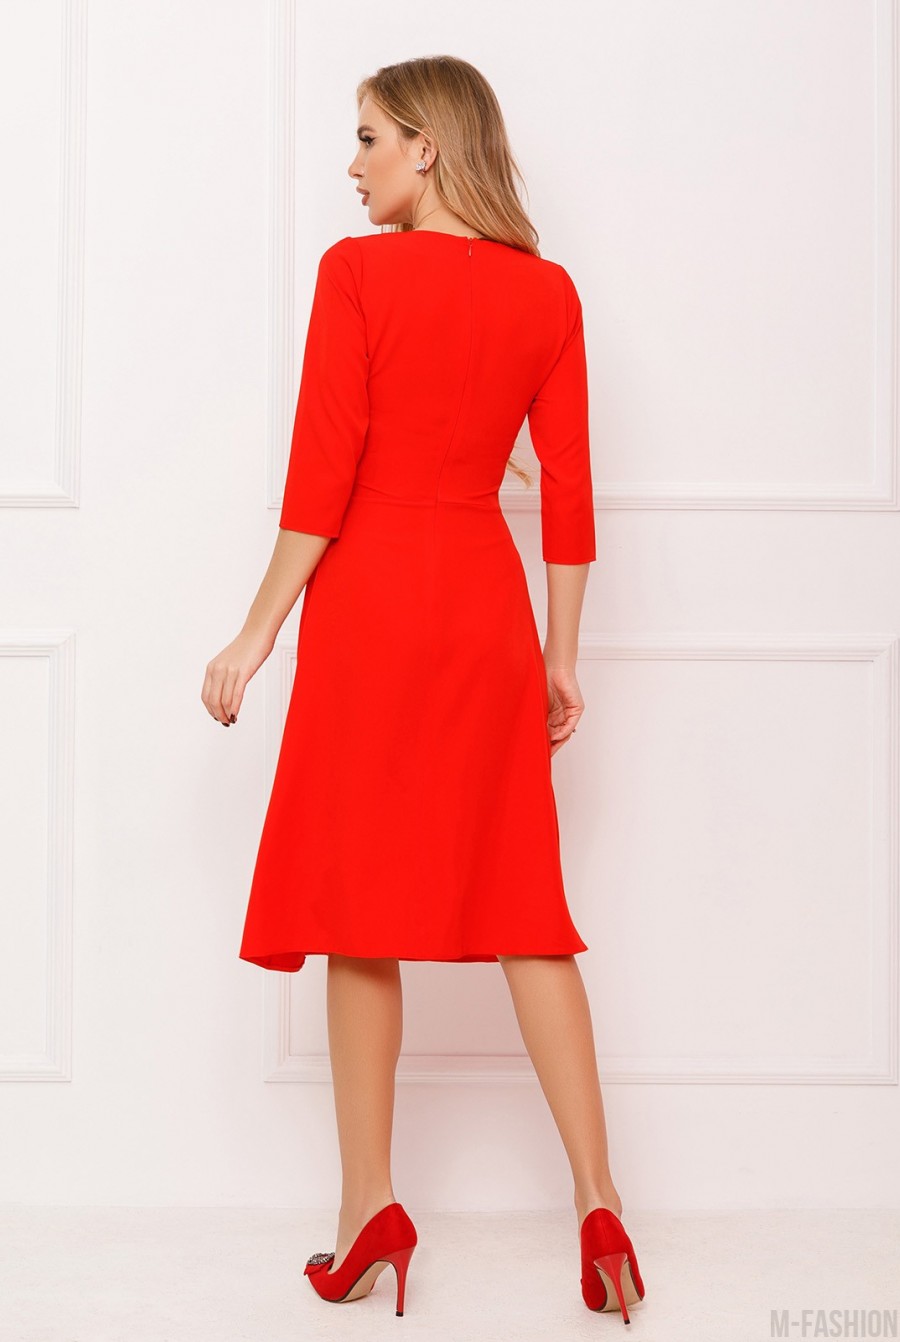 Классическое платье красного цвета - Фото 3